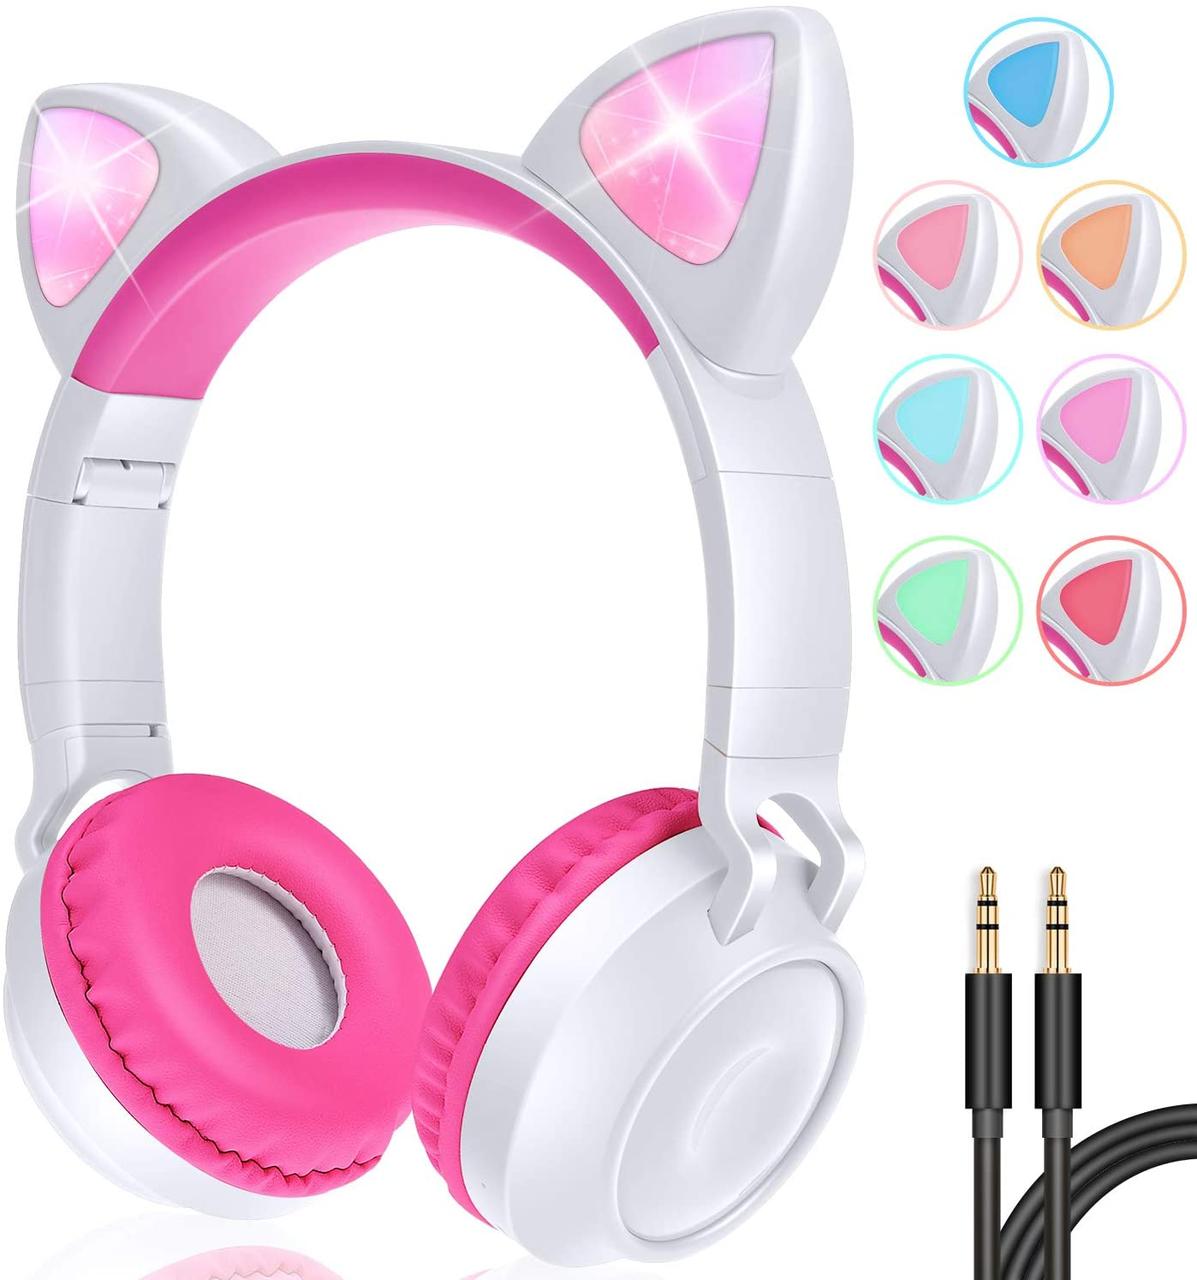 Беспроводные детские наушники Wireless Headphones Cat Ear ZW-028, фото 1